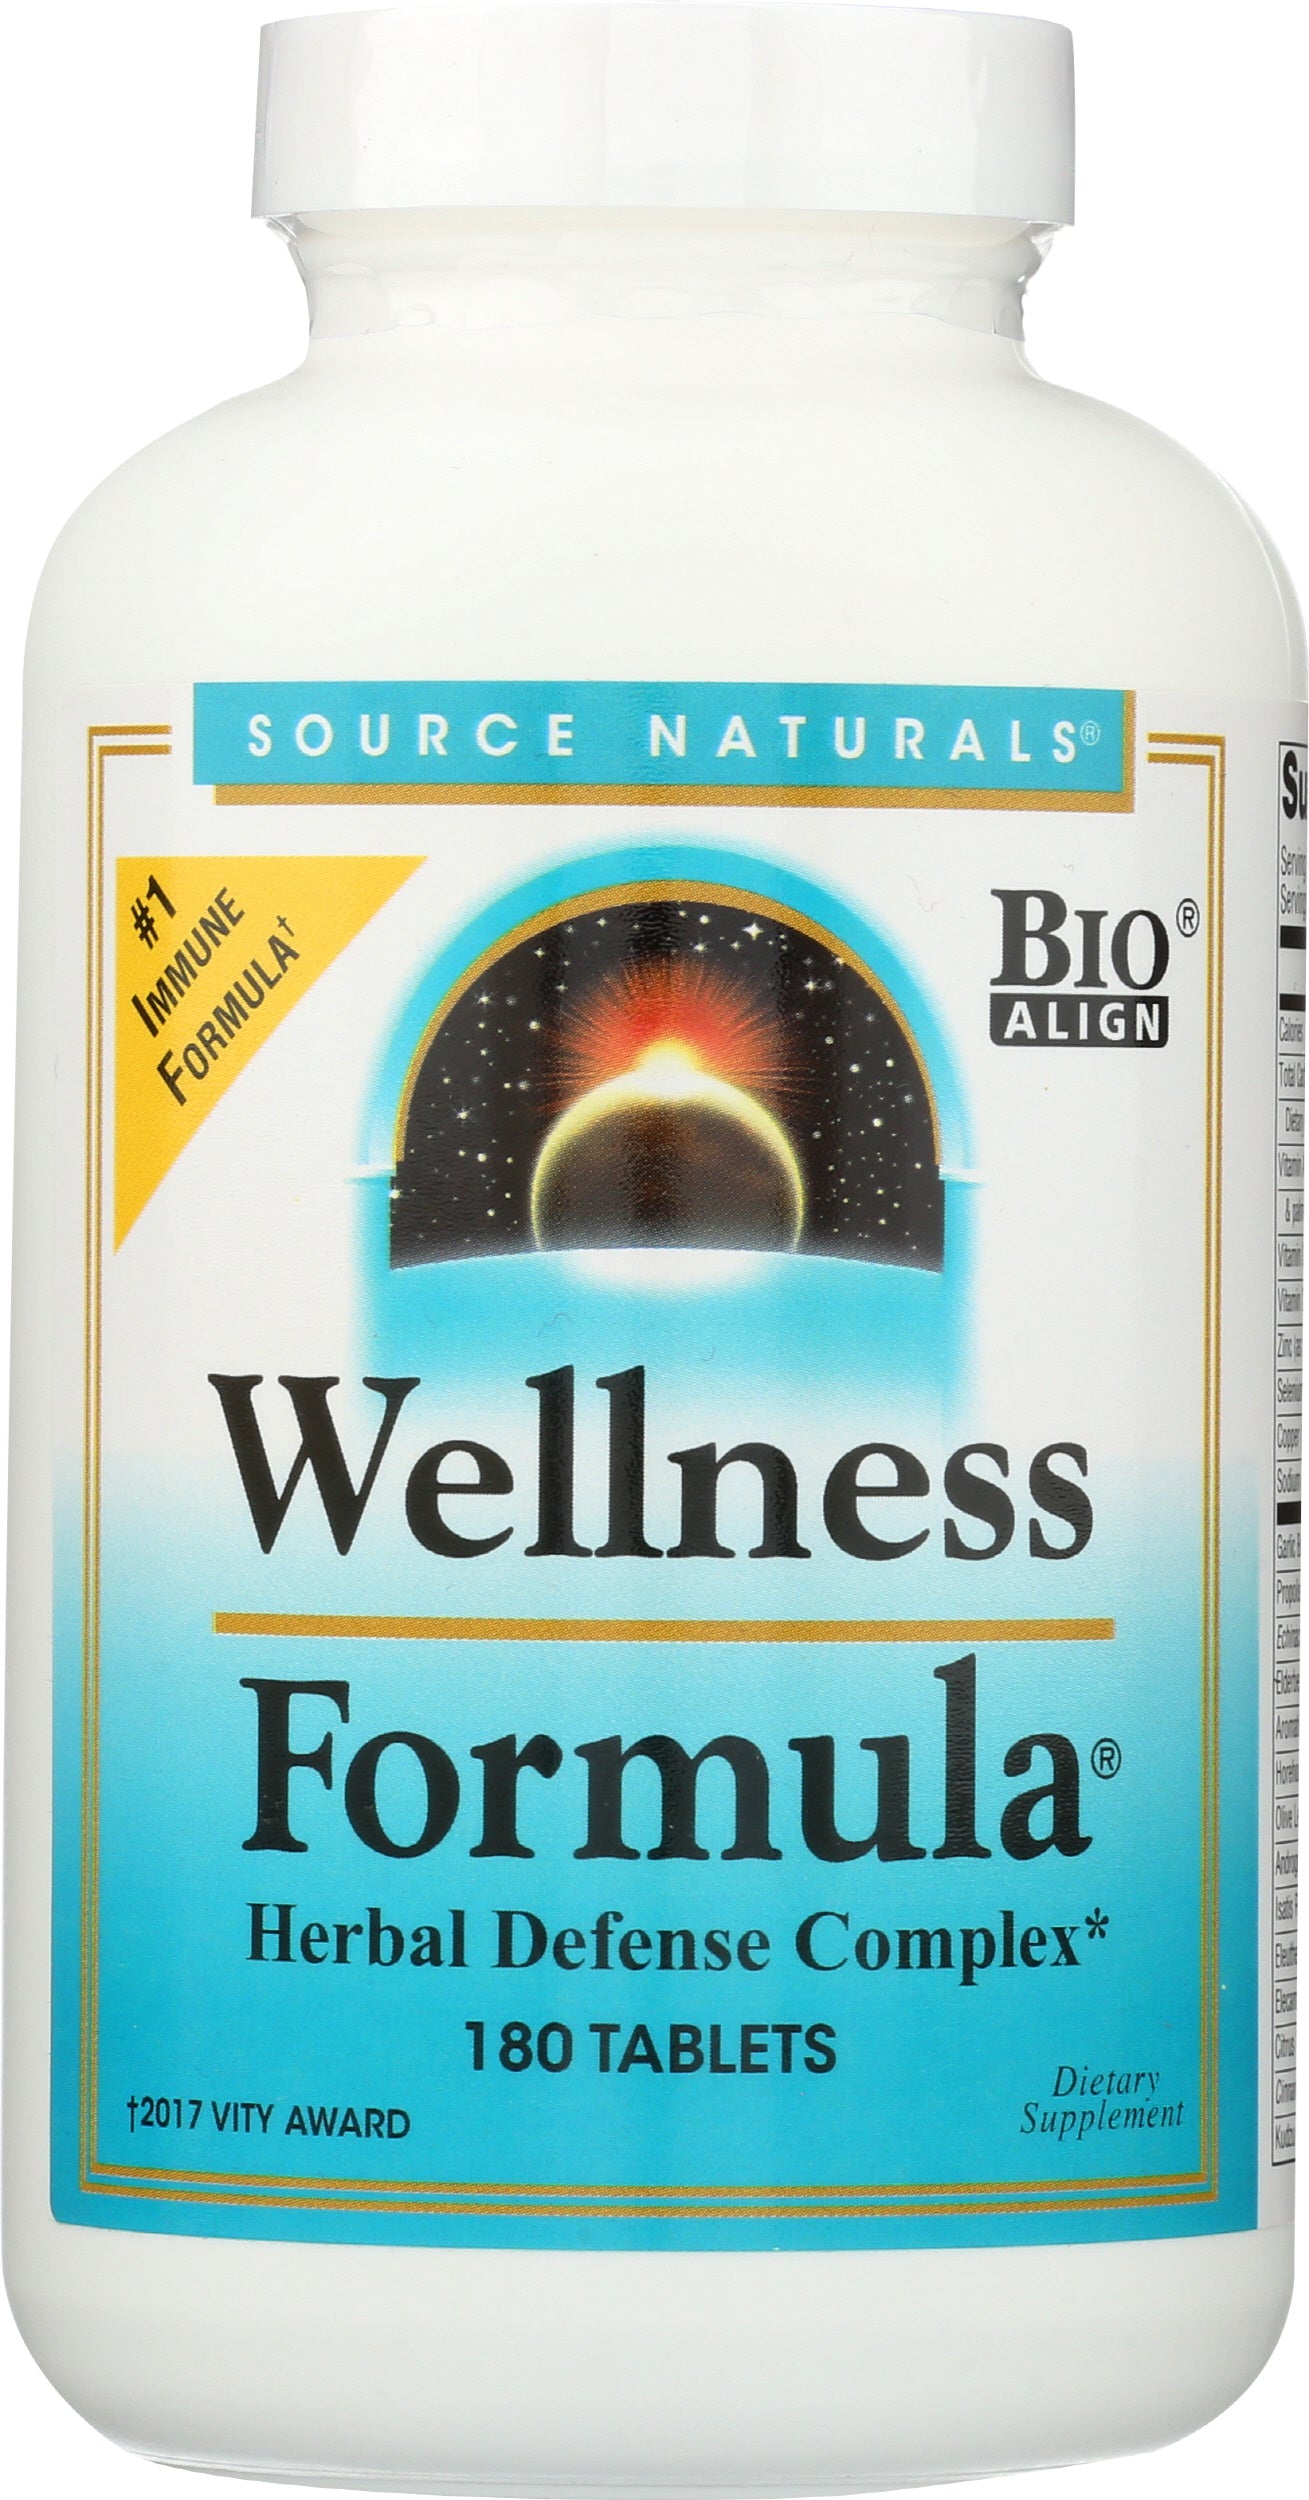 Source Naturals Wellness Formula 180 Tablets Front of Bottle